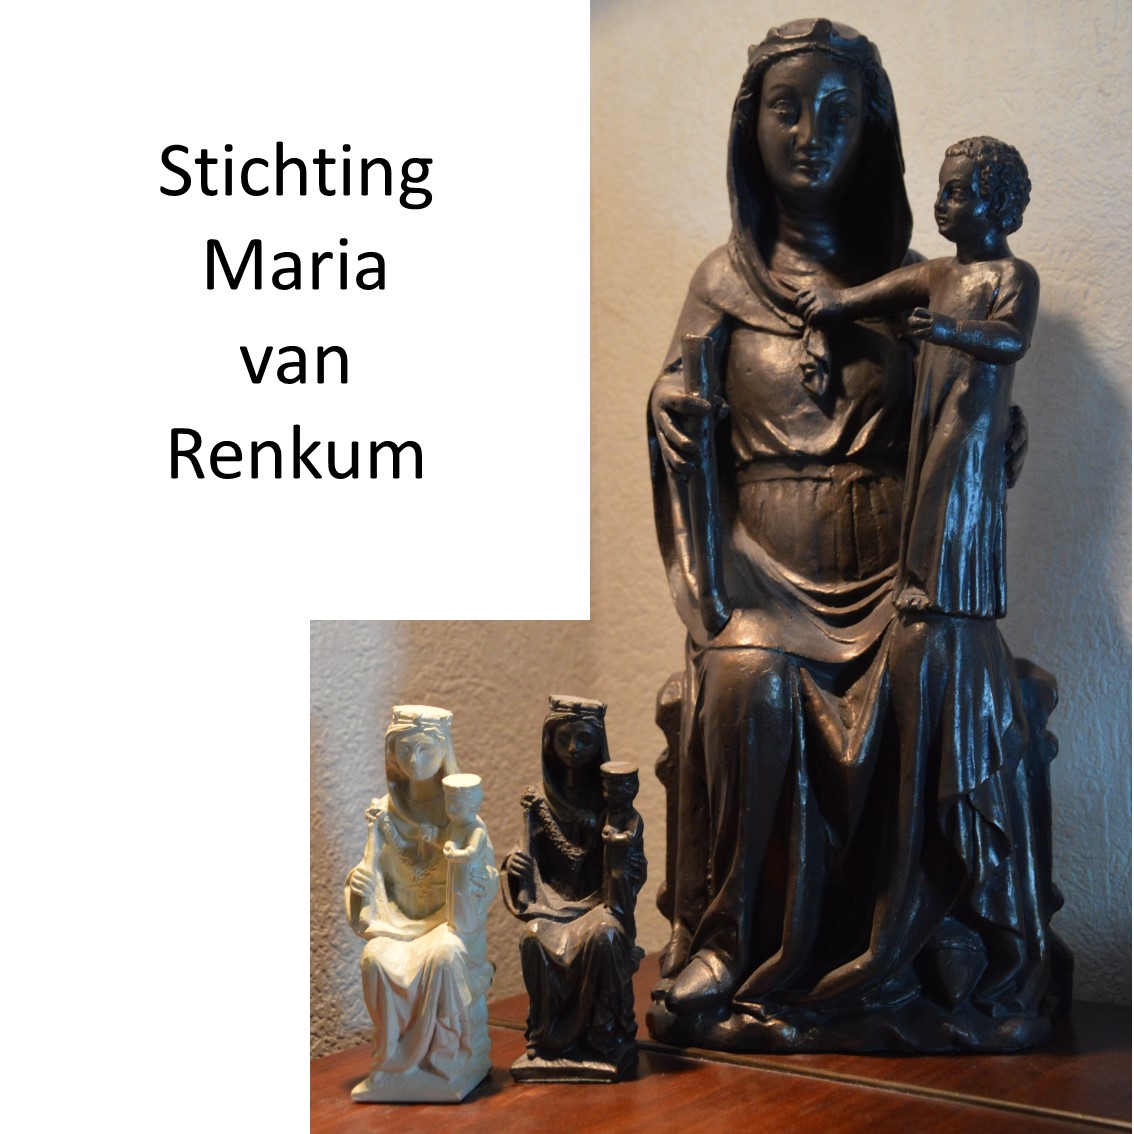 Stichting Maria van Renkum